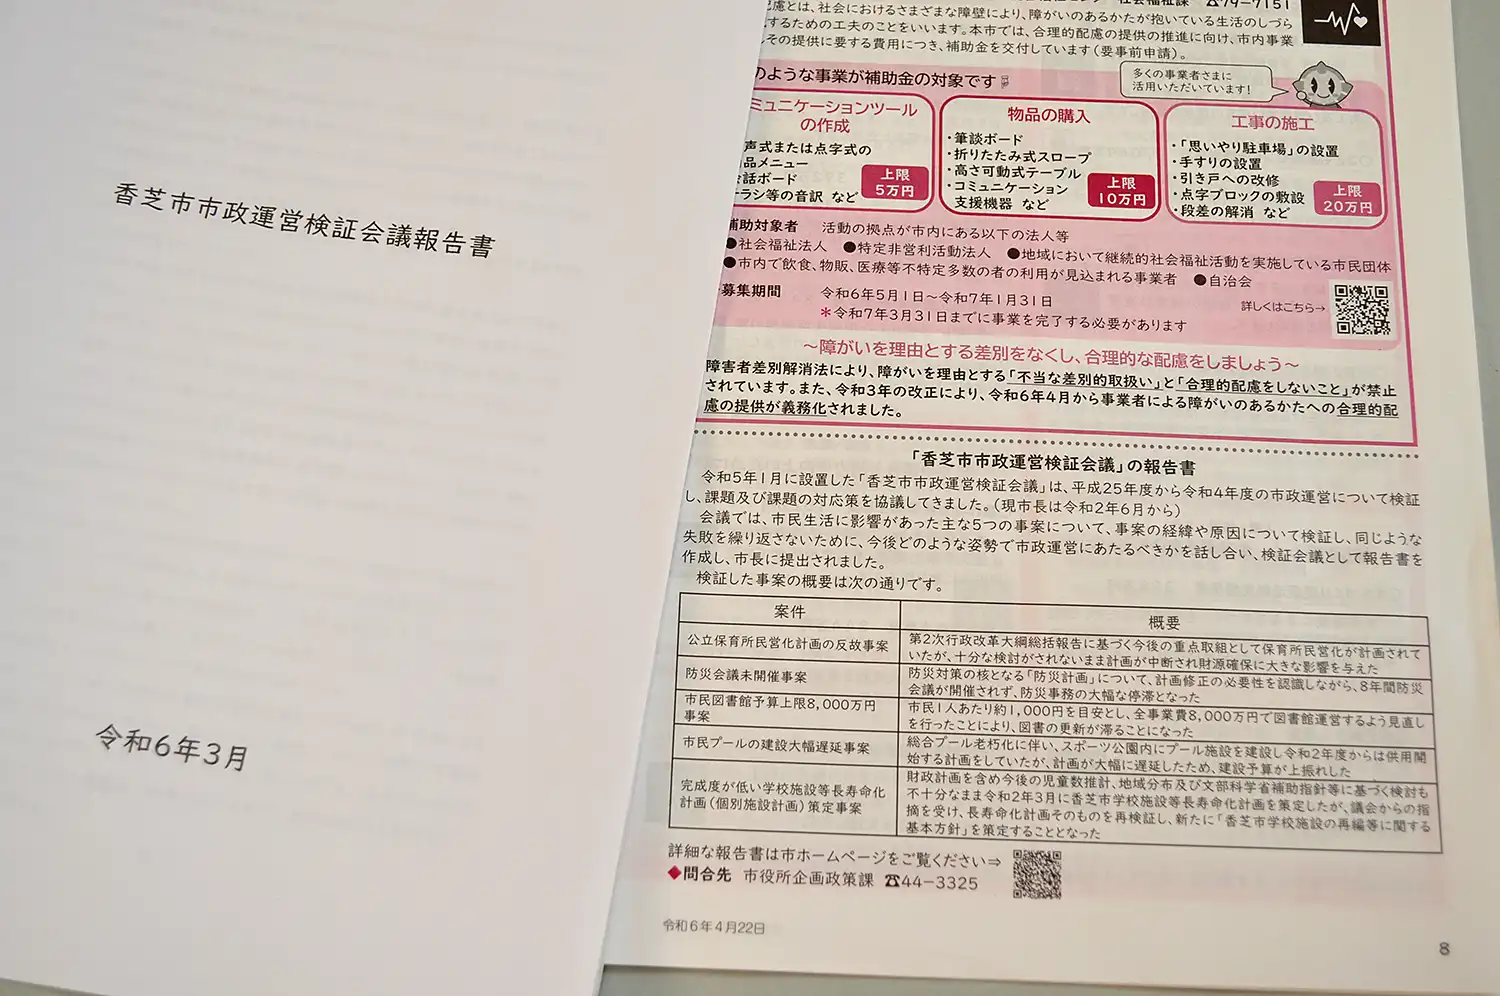 香芝市ホームページで公開されている市政運営検証会議報告書（左）と市広報紙に掲載された報告書の概要